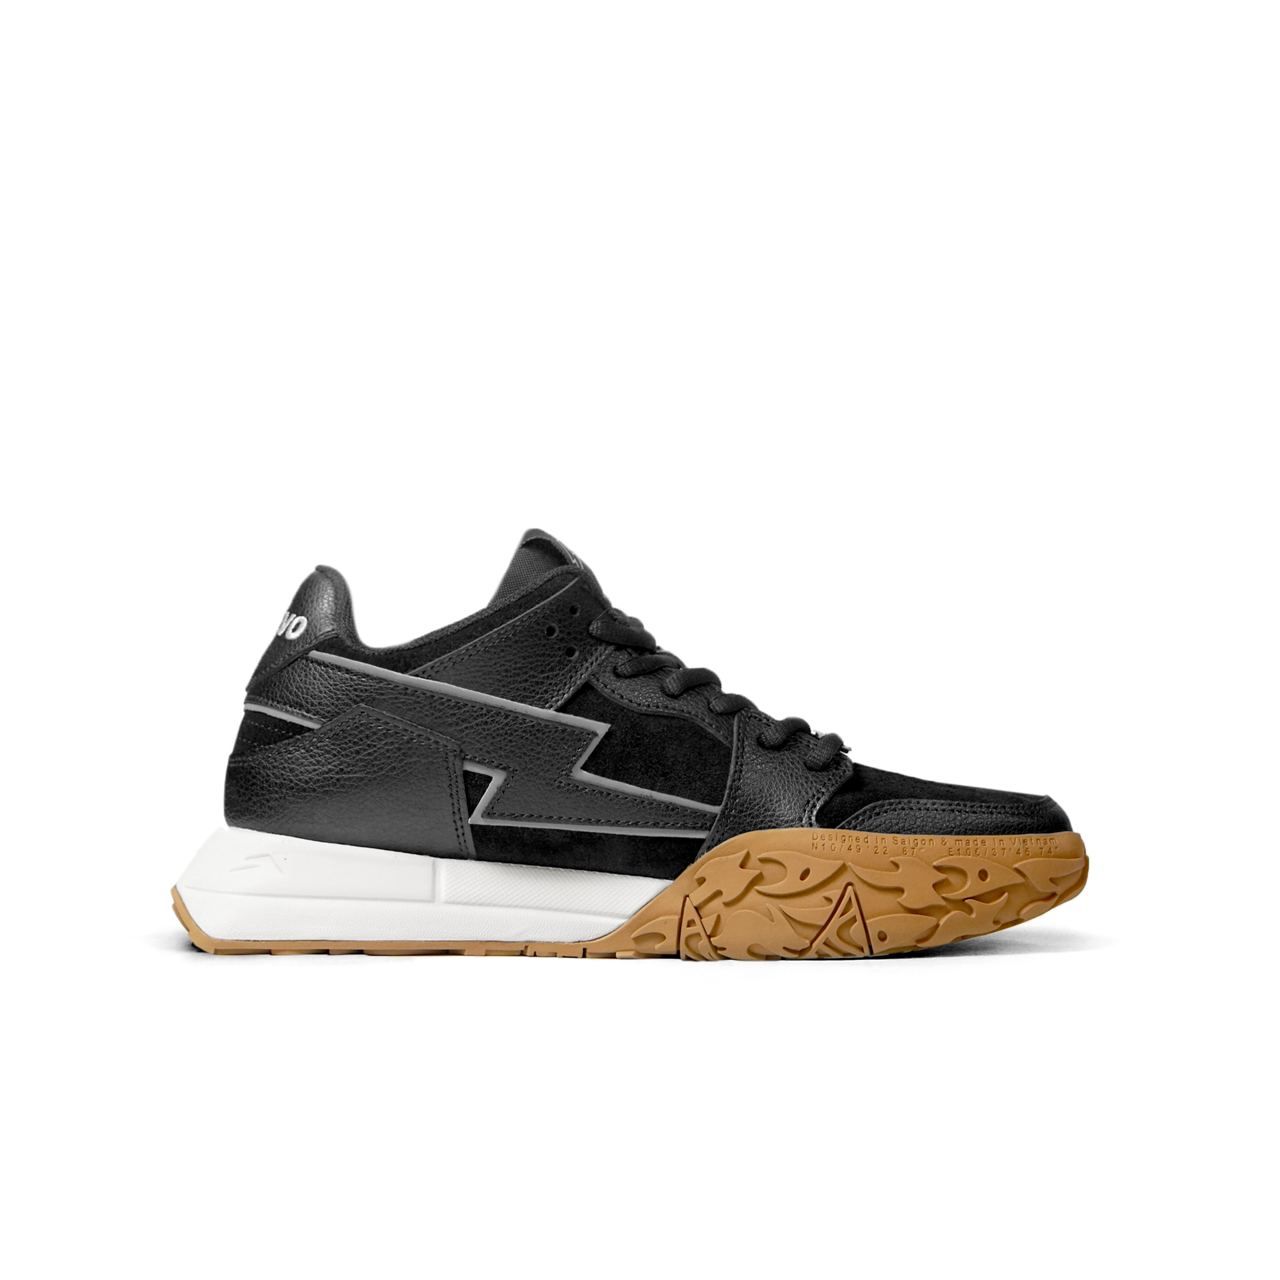  [CHÍNH HÃNG] Giày Sneaker Revo Gen 1 Low - Black 